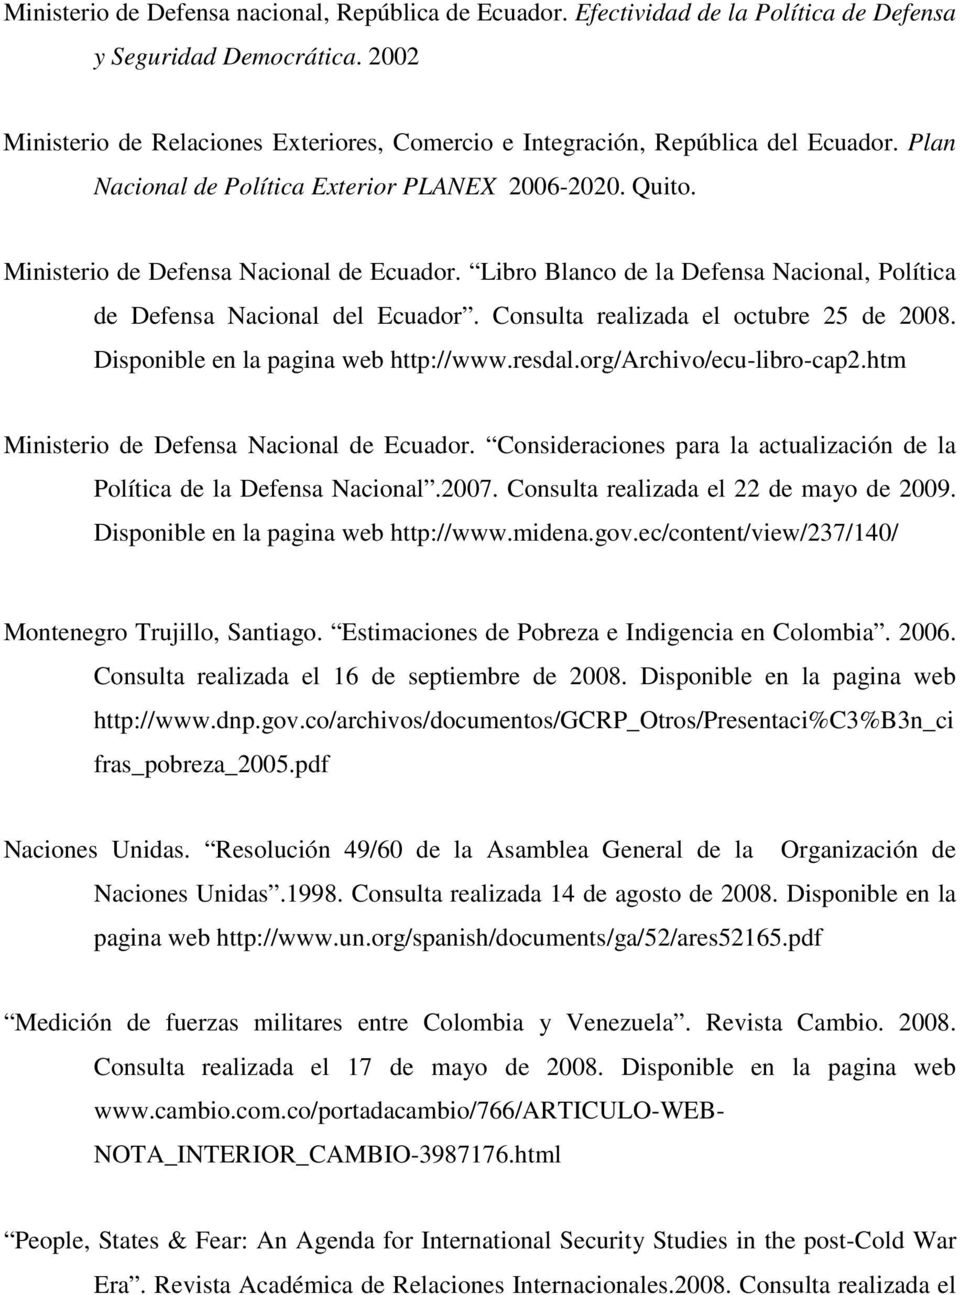 Libro Blanco de la Defensa Nacional, Política de Defensa Nacional del Ecuador. Consulta realizada el octubre 25 de 2008. Disponible en la pagina web http://www.resdal.org/archivo/ecu-libro-cap2.